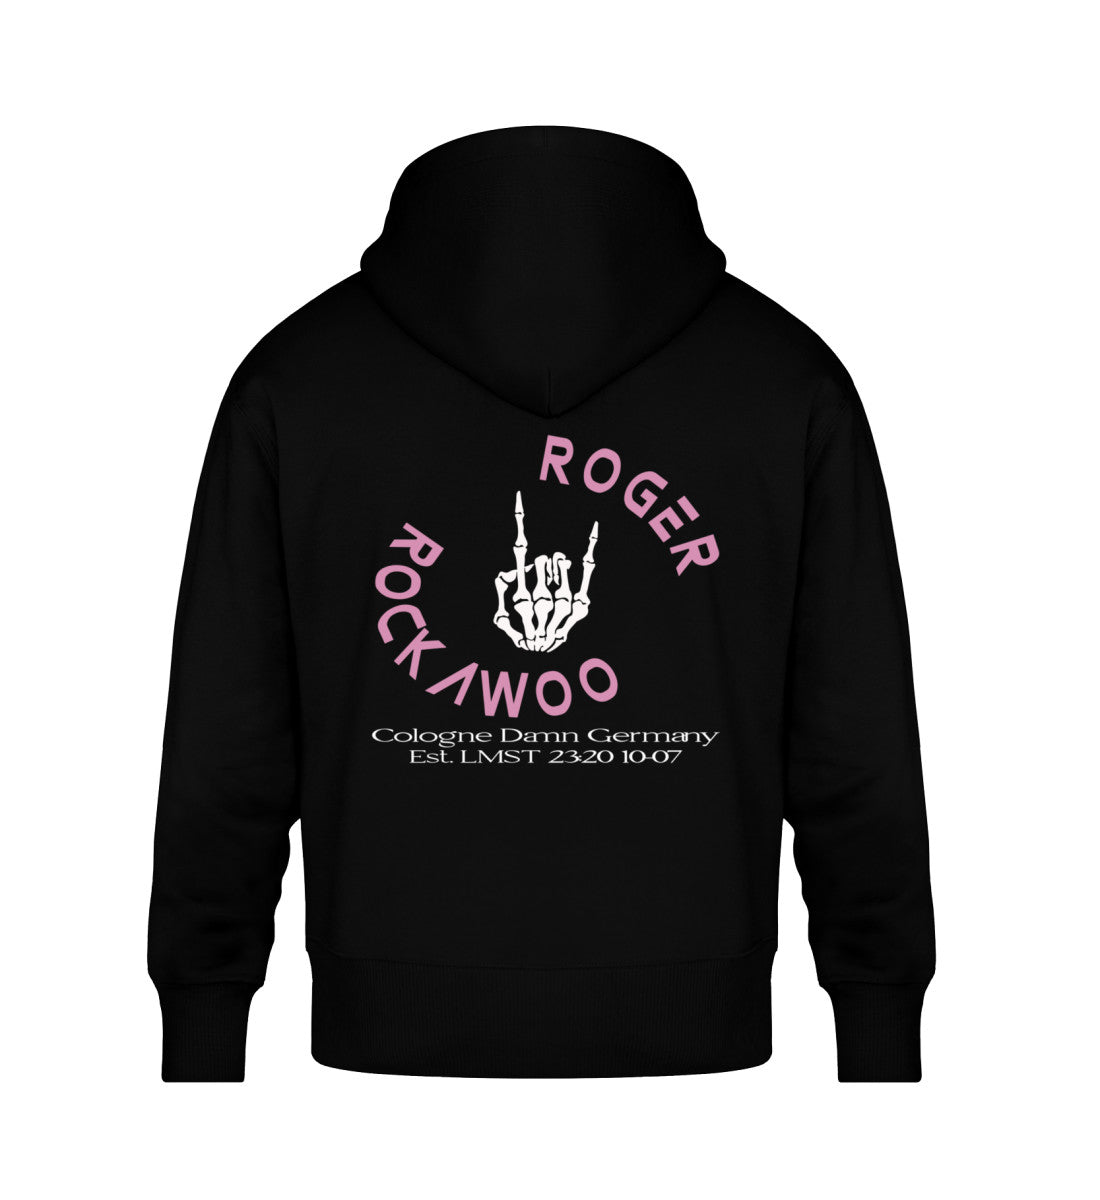 Schwarzer Oversize Hoodie Unisex für Frauen und Männer bedruckt mit dem Design der Roger Rockawoo Kollektion Guitar Goddness Rocknroll Weekend